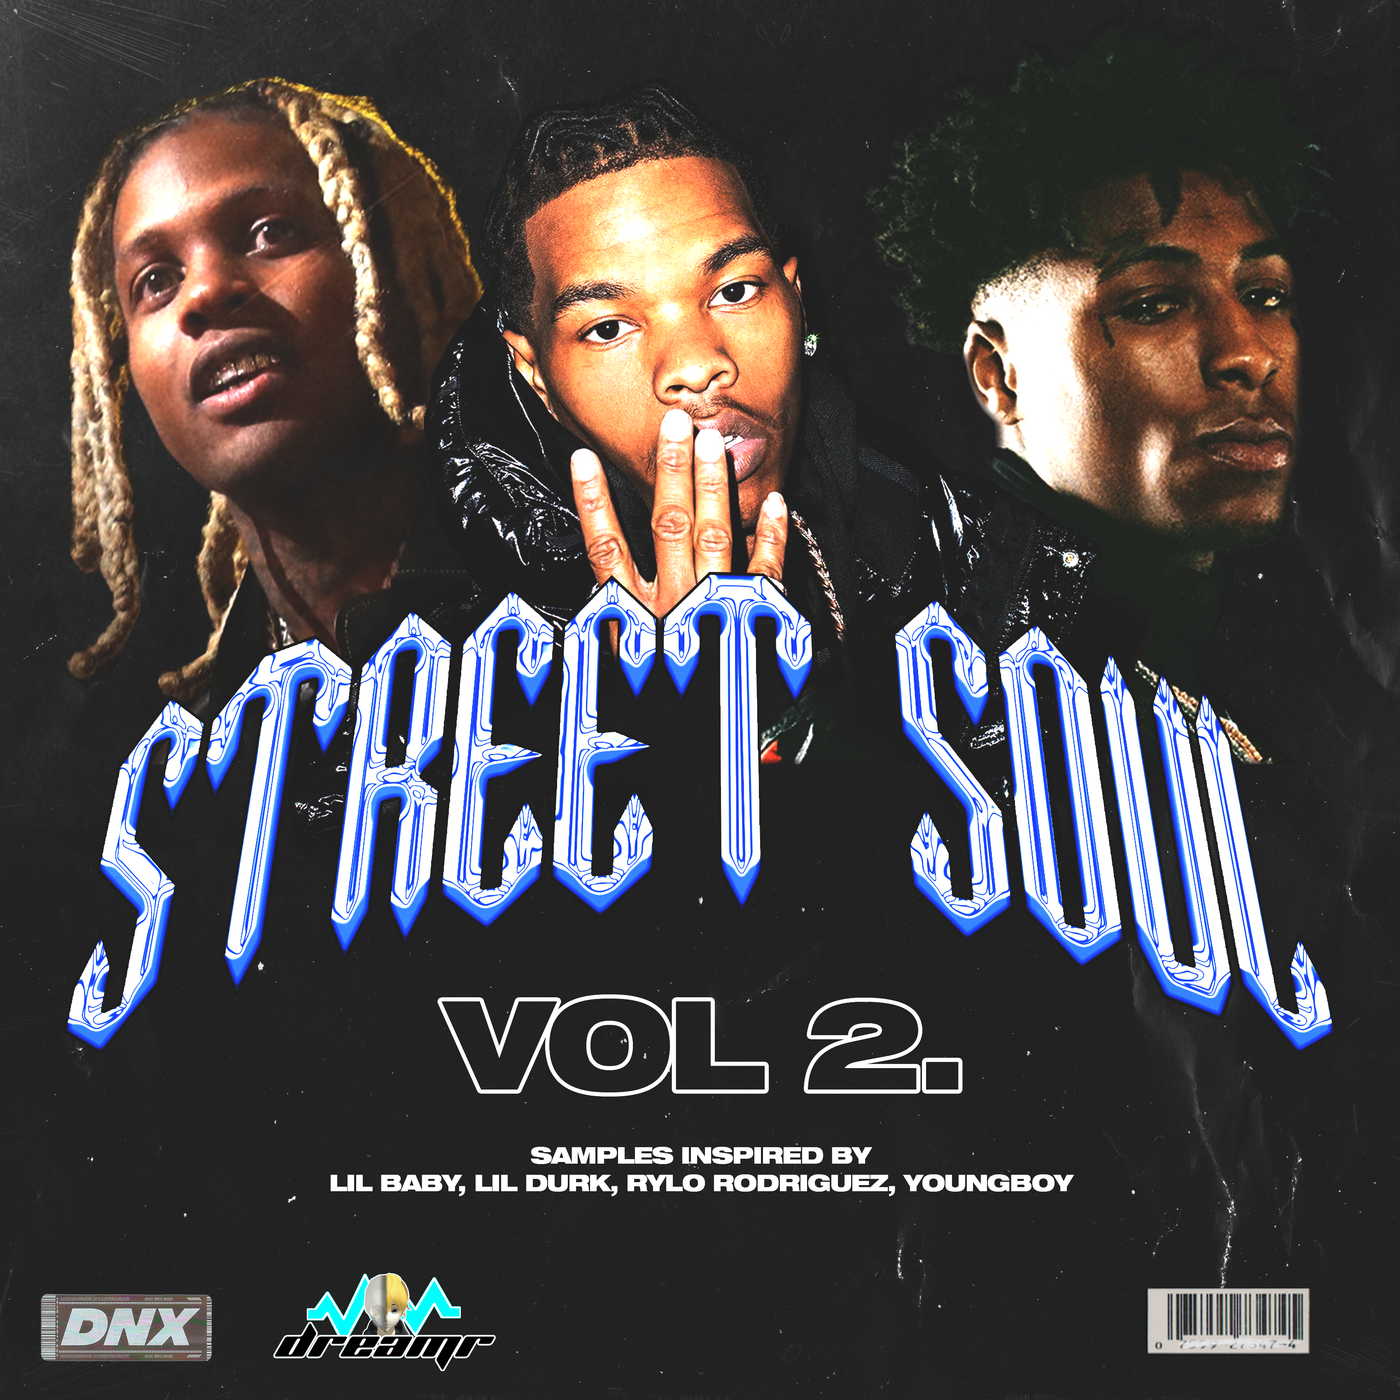 Street Soul Vol. 2 - Sample Pack - DNX - Do Not Cross